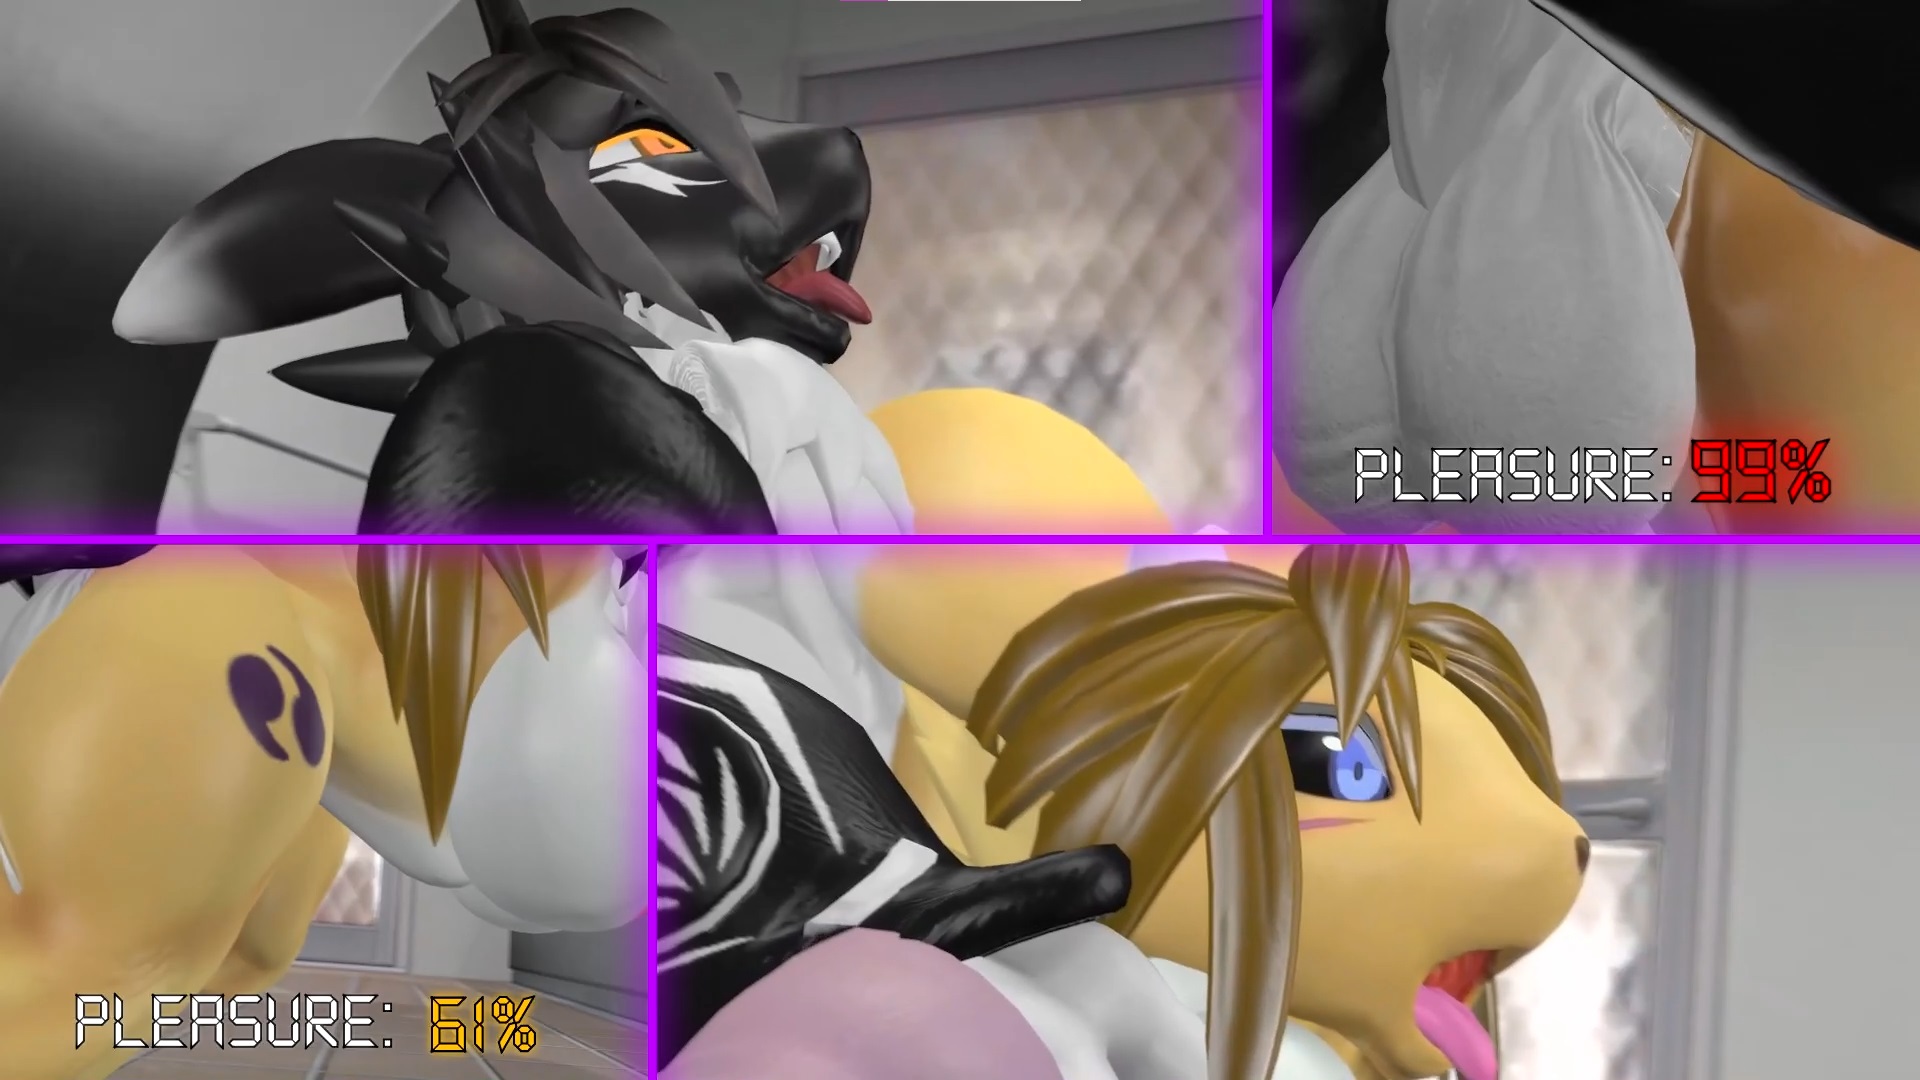 Female Digimon Porn Captions - Corruption by Kx2-SFM - Drug-K Archive (Fan edit) HMV